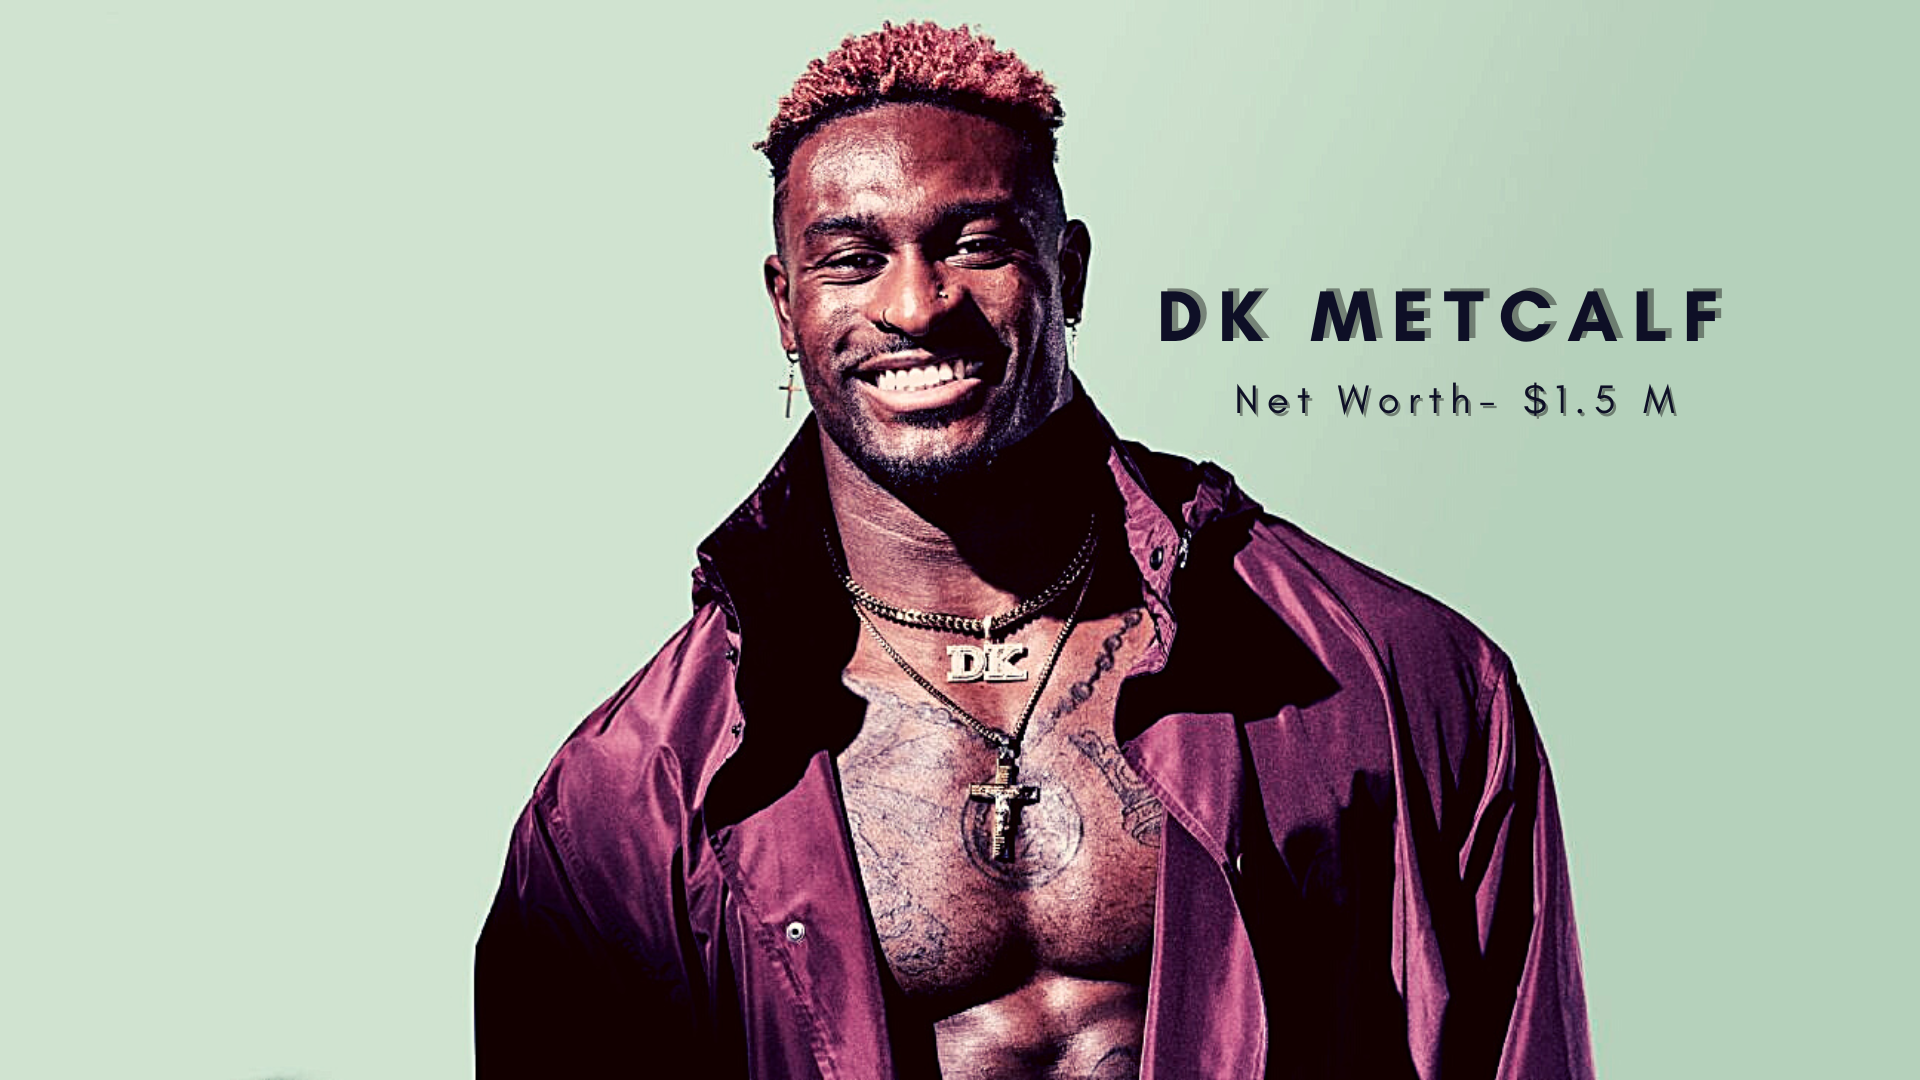 DK Metcalf Net Worth